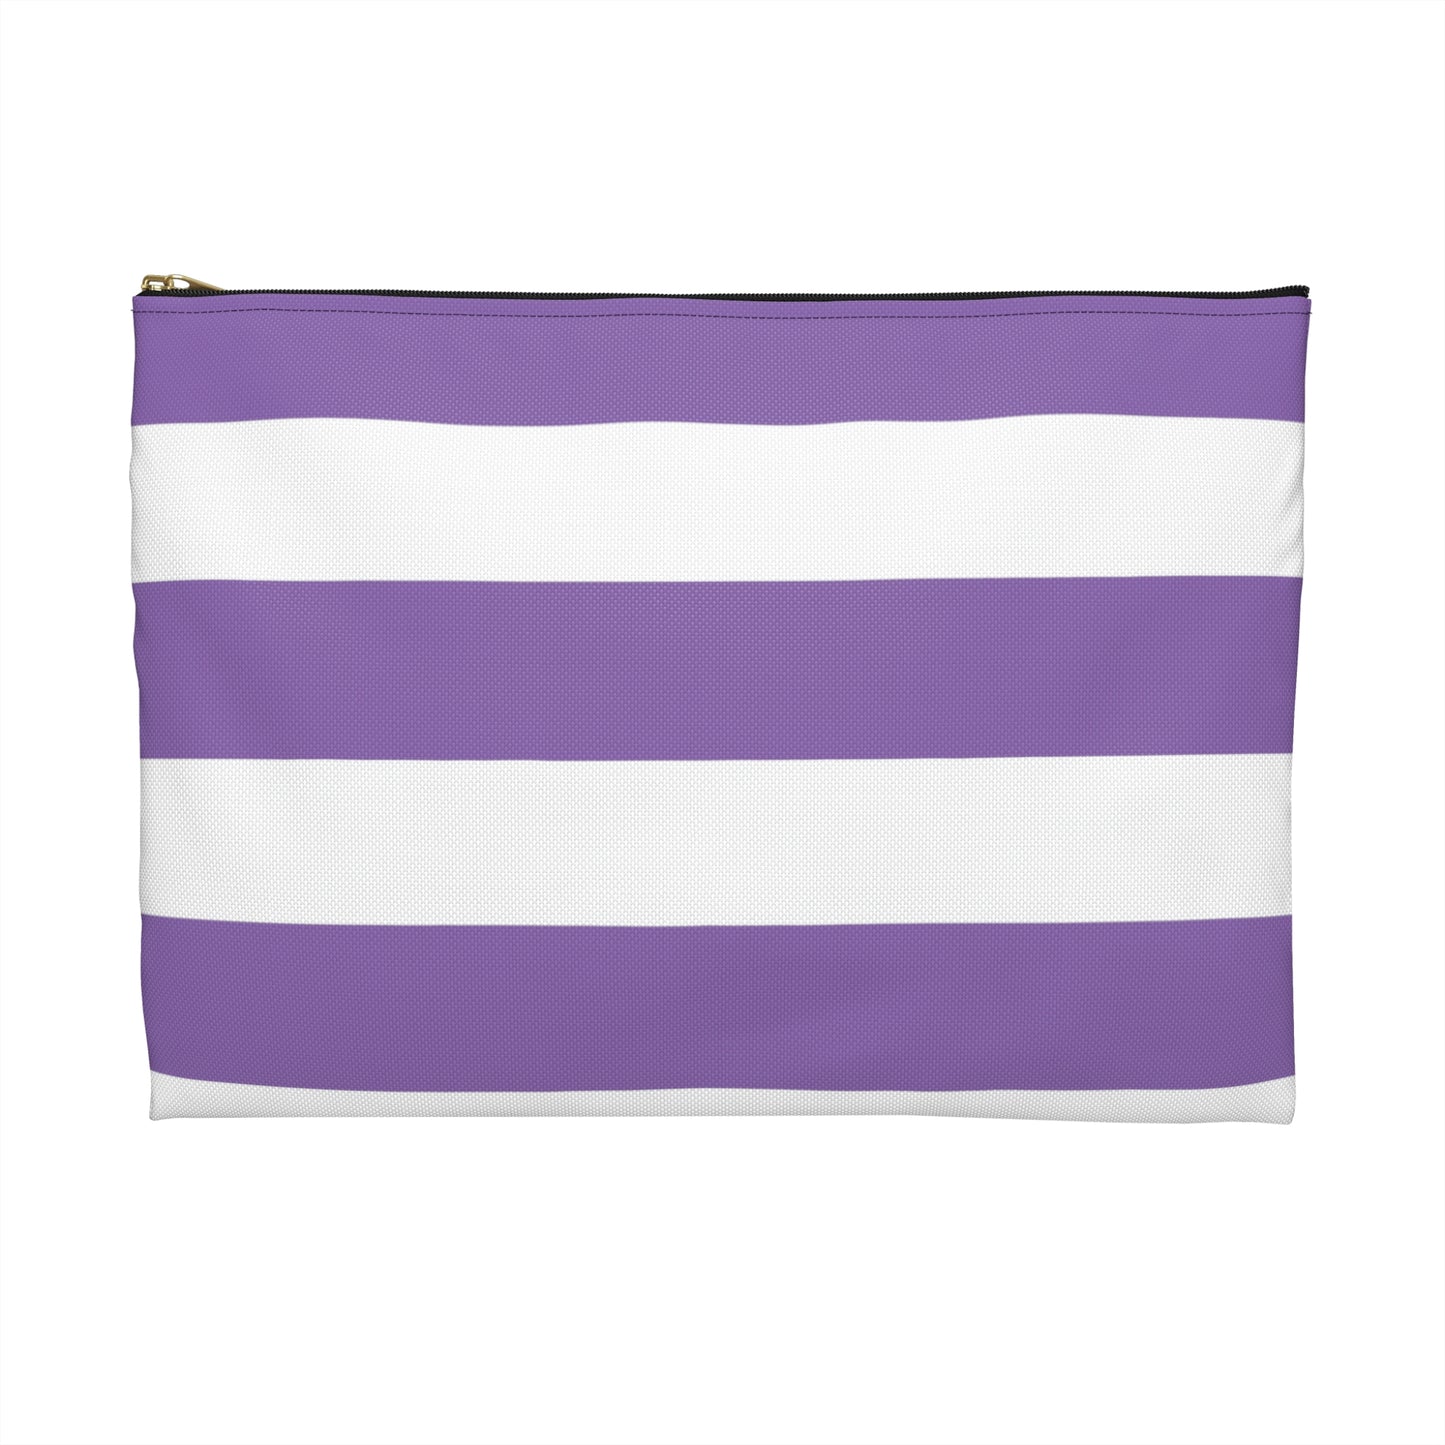 Flat Zipper Pouch - Lilac/White Stripes